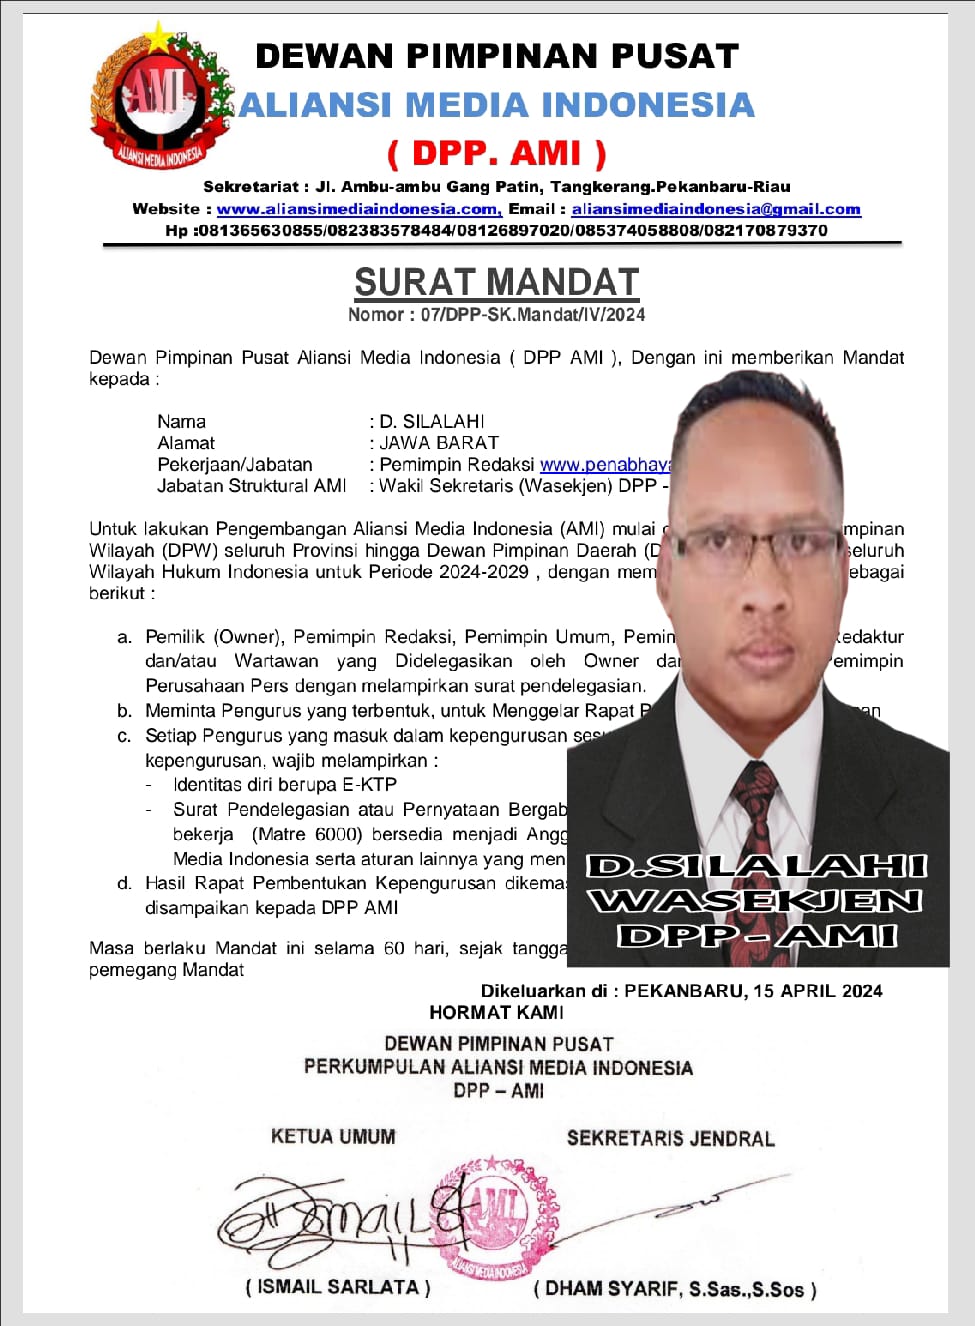 DPP AMI Siap Mengembangkan Sayapnya di Seluruh Nusantara, Melalui Mandat yang Diberikan Kepada D.Silalahi Selaku Wasekjen